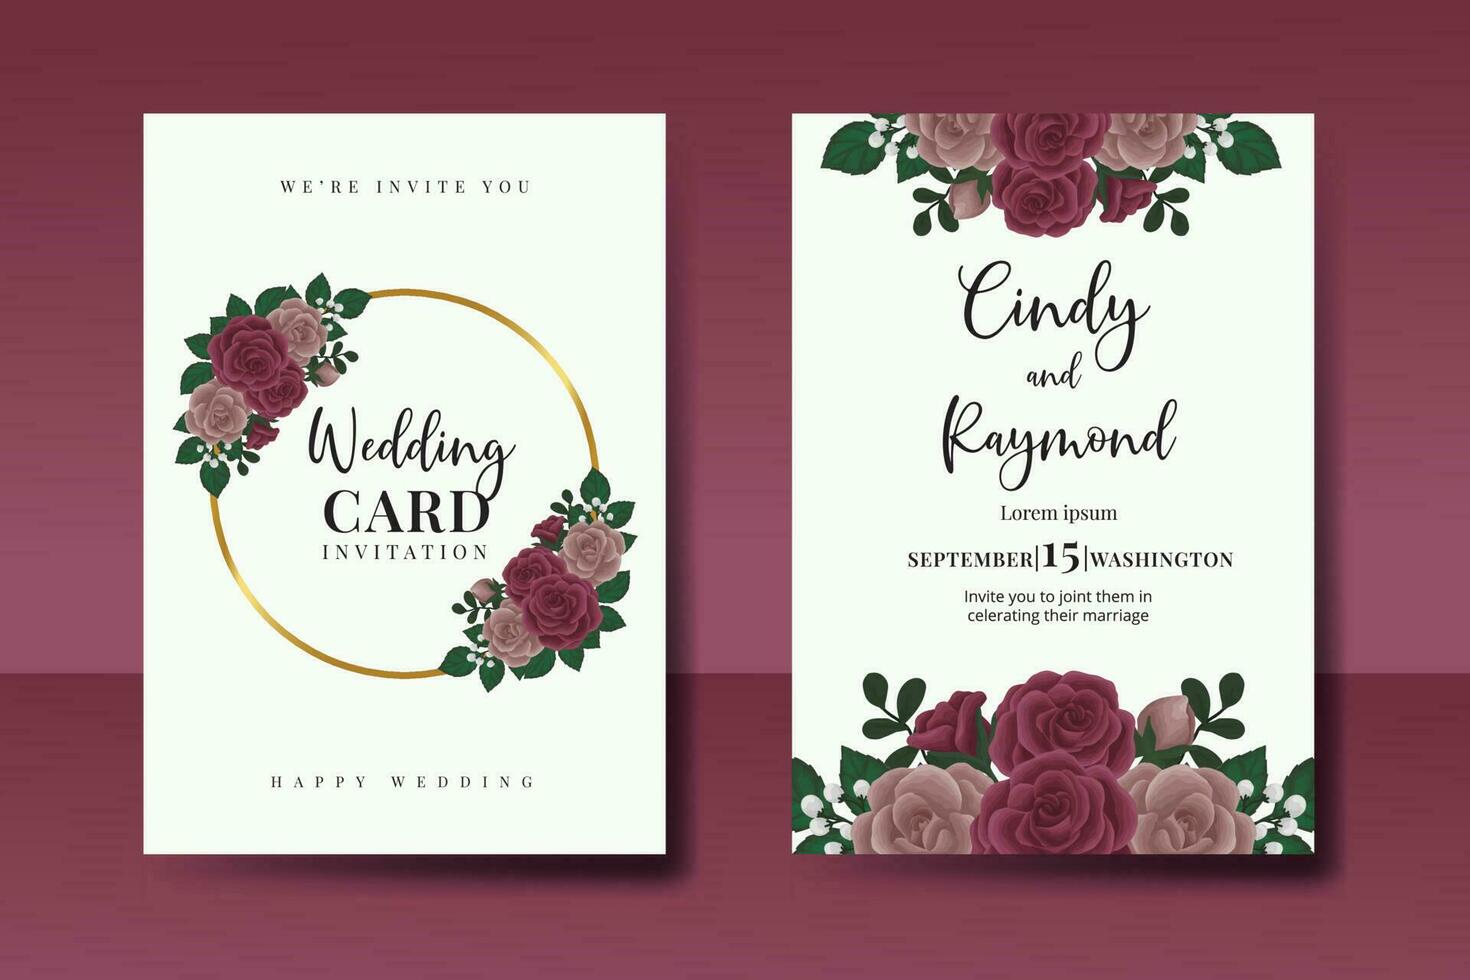 Boda invitación marco colocar, floral acuarela digital mano dibujado granate Rosa flor diseño invitación tarjeta modelo vector